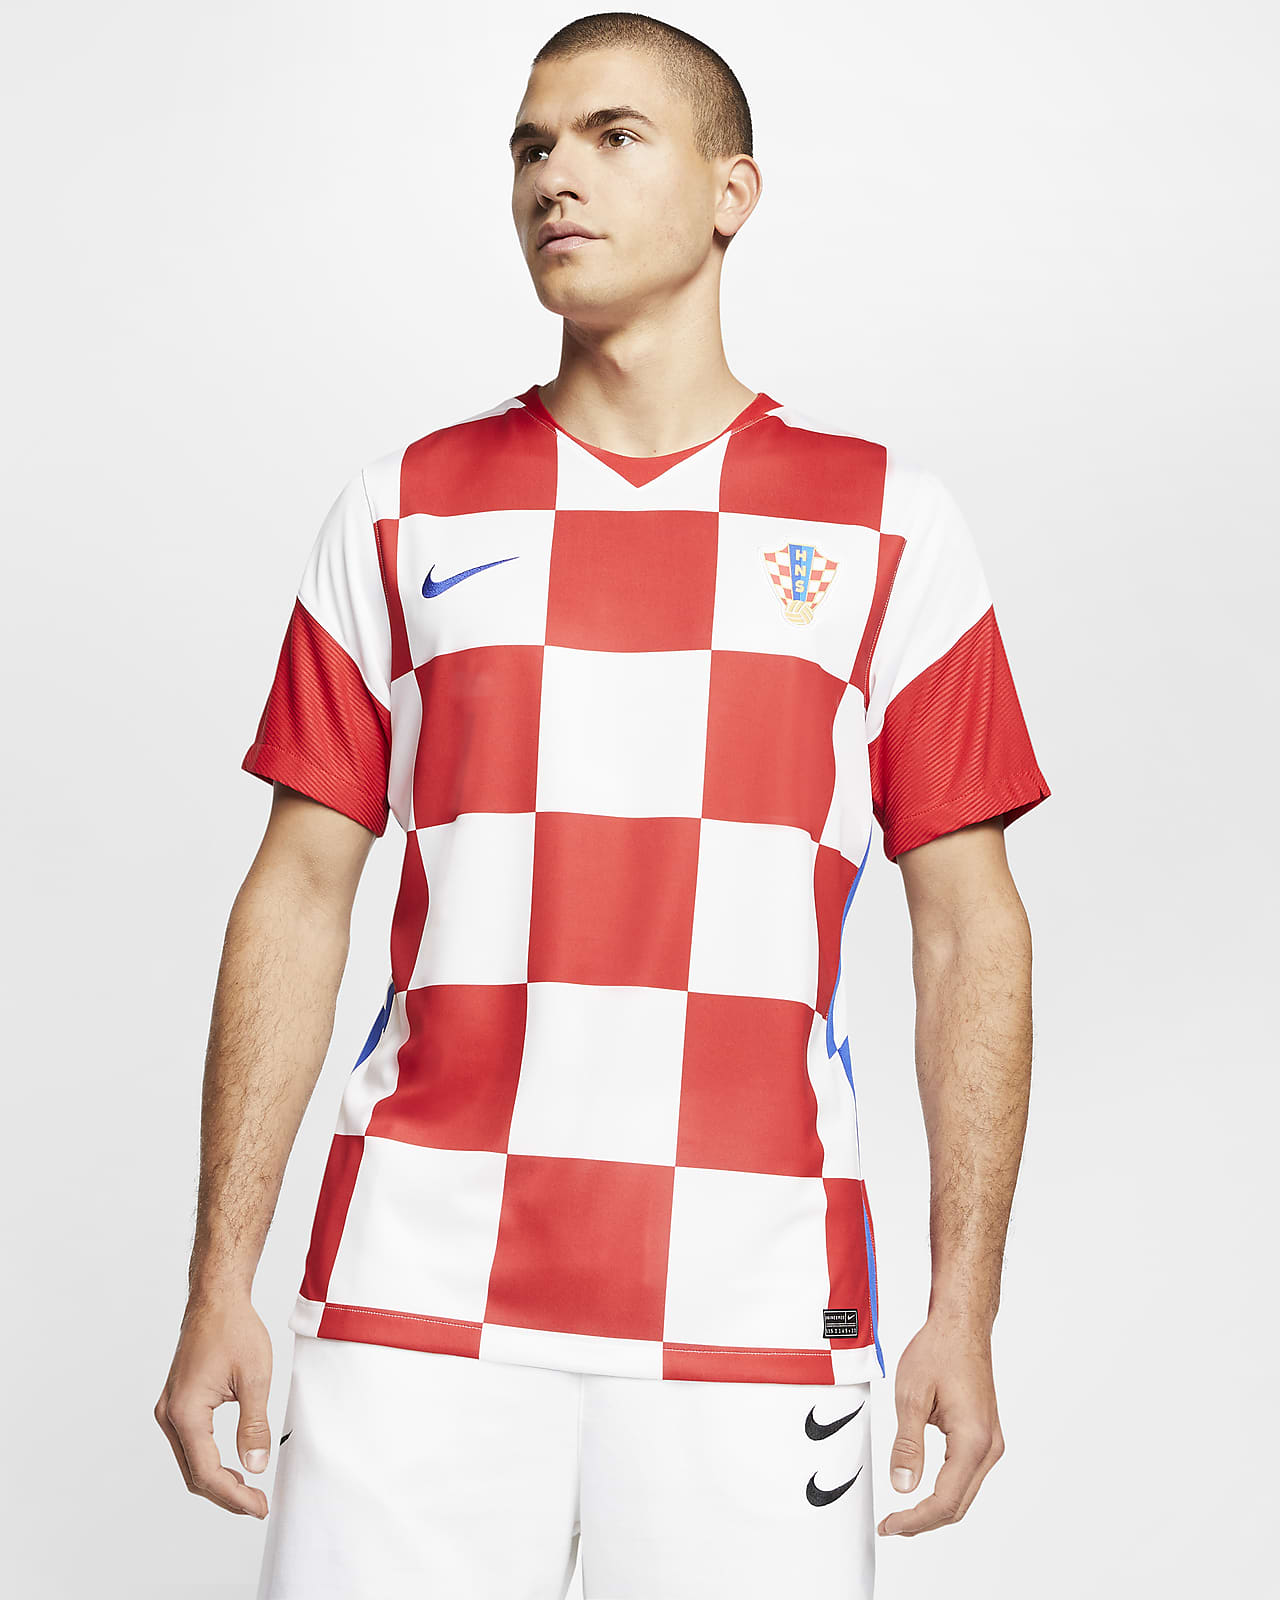 Nike公式 クロアチア スタジアム ホーム メンズ サッカーユニフォーム オンラインストア 通販サイト